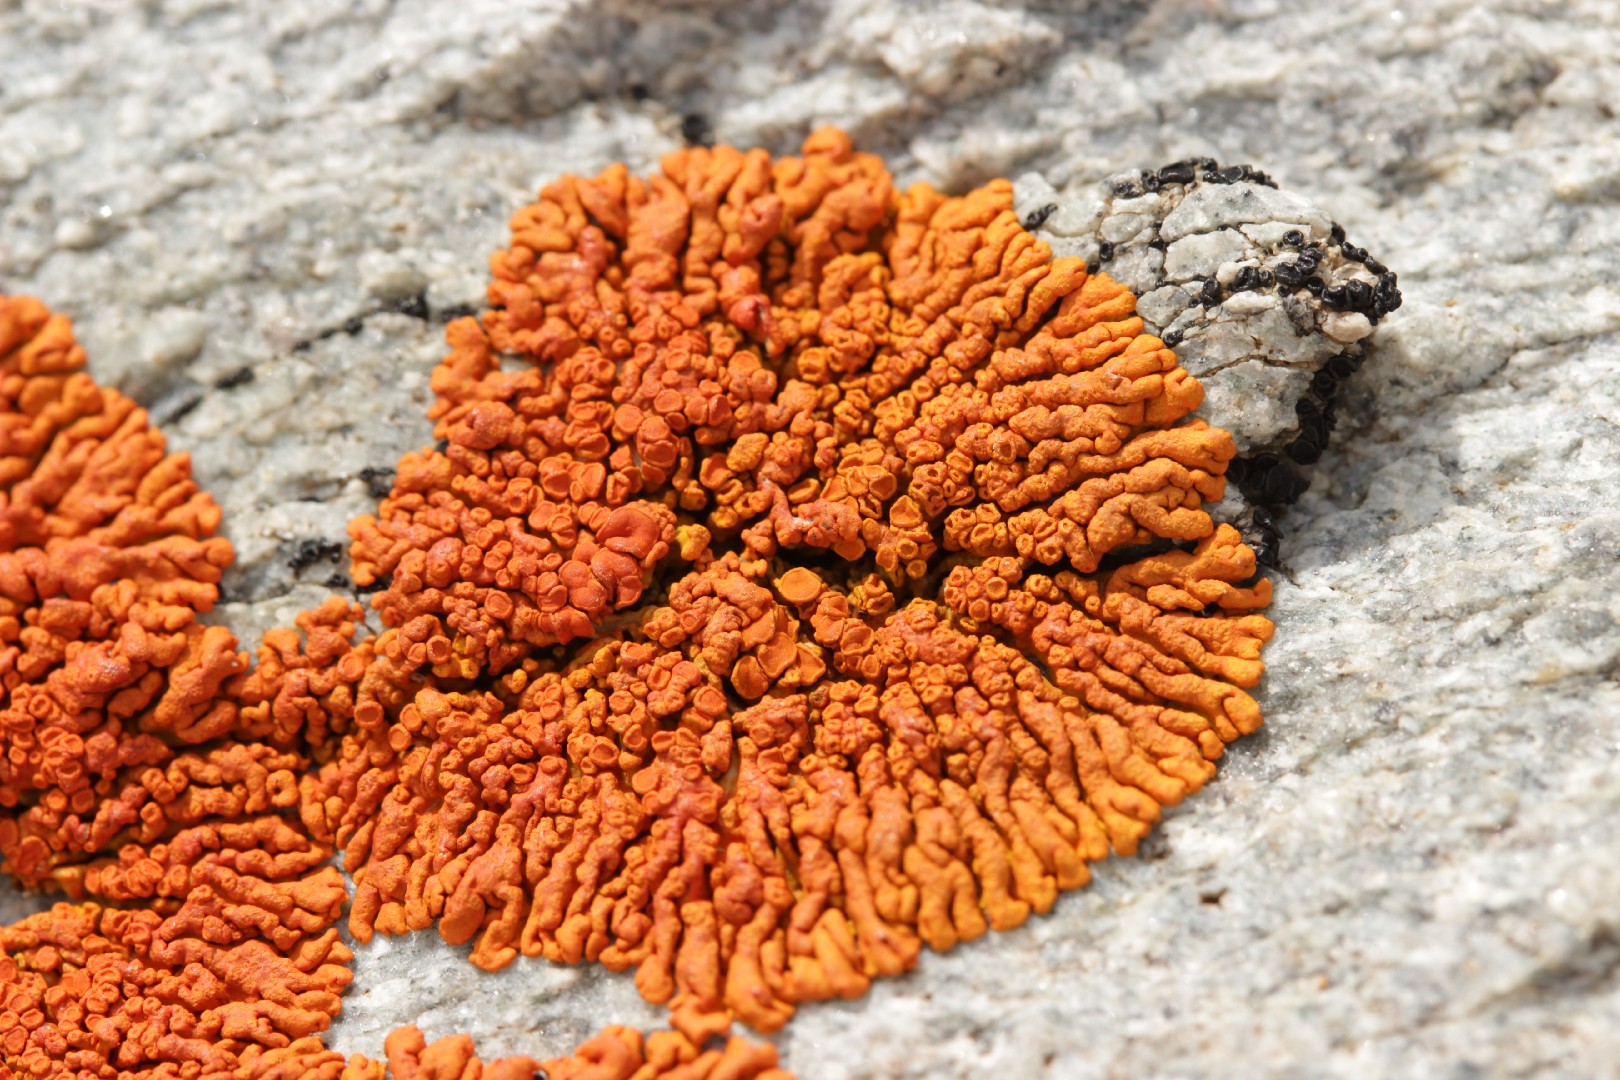 Elegant sunburst lichen